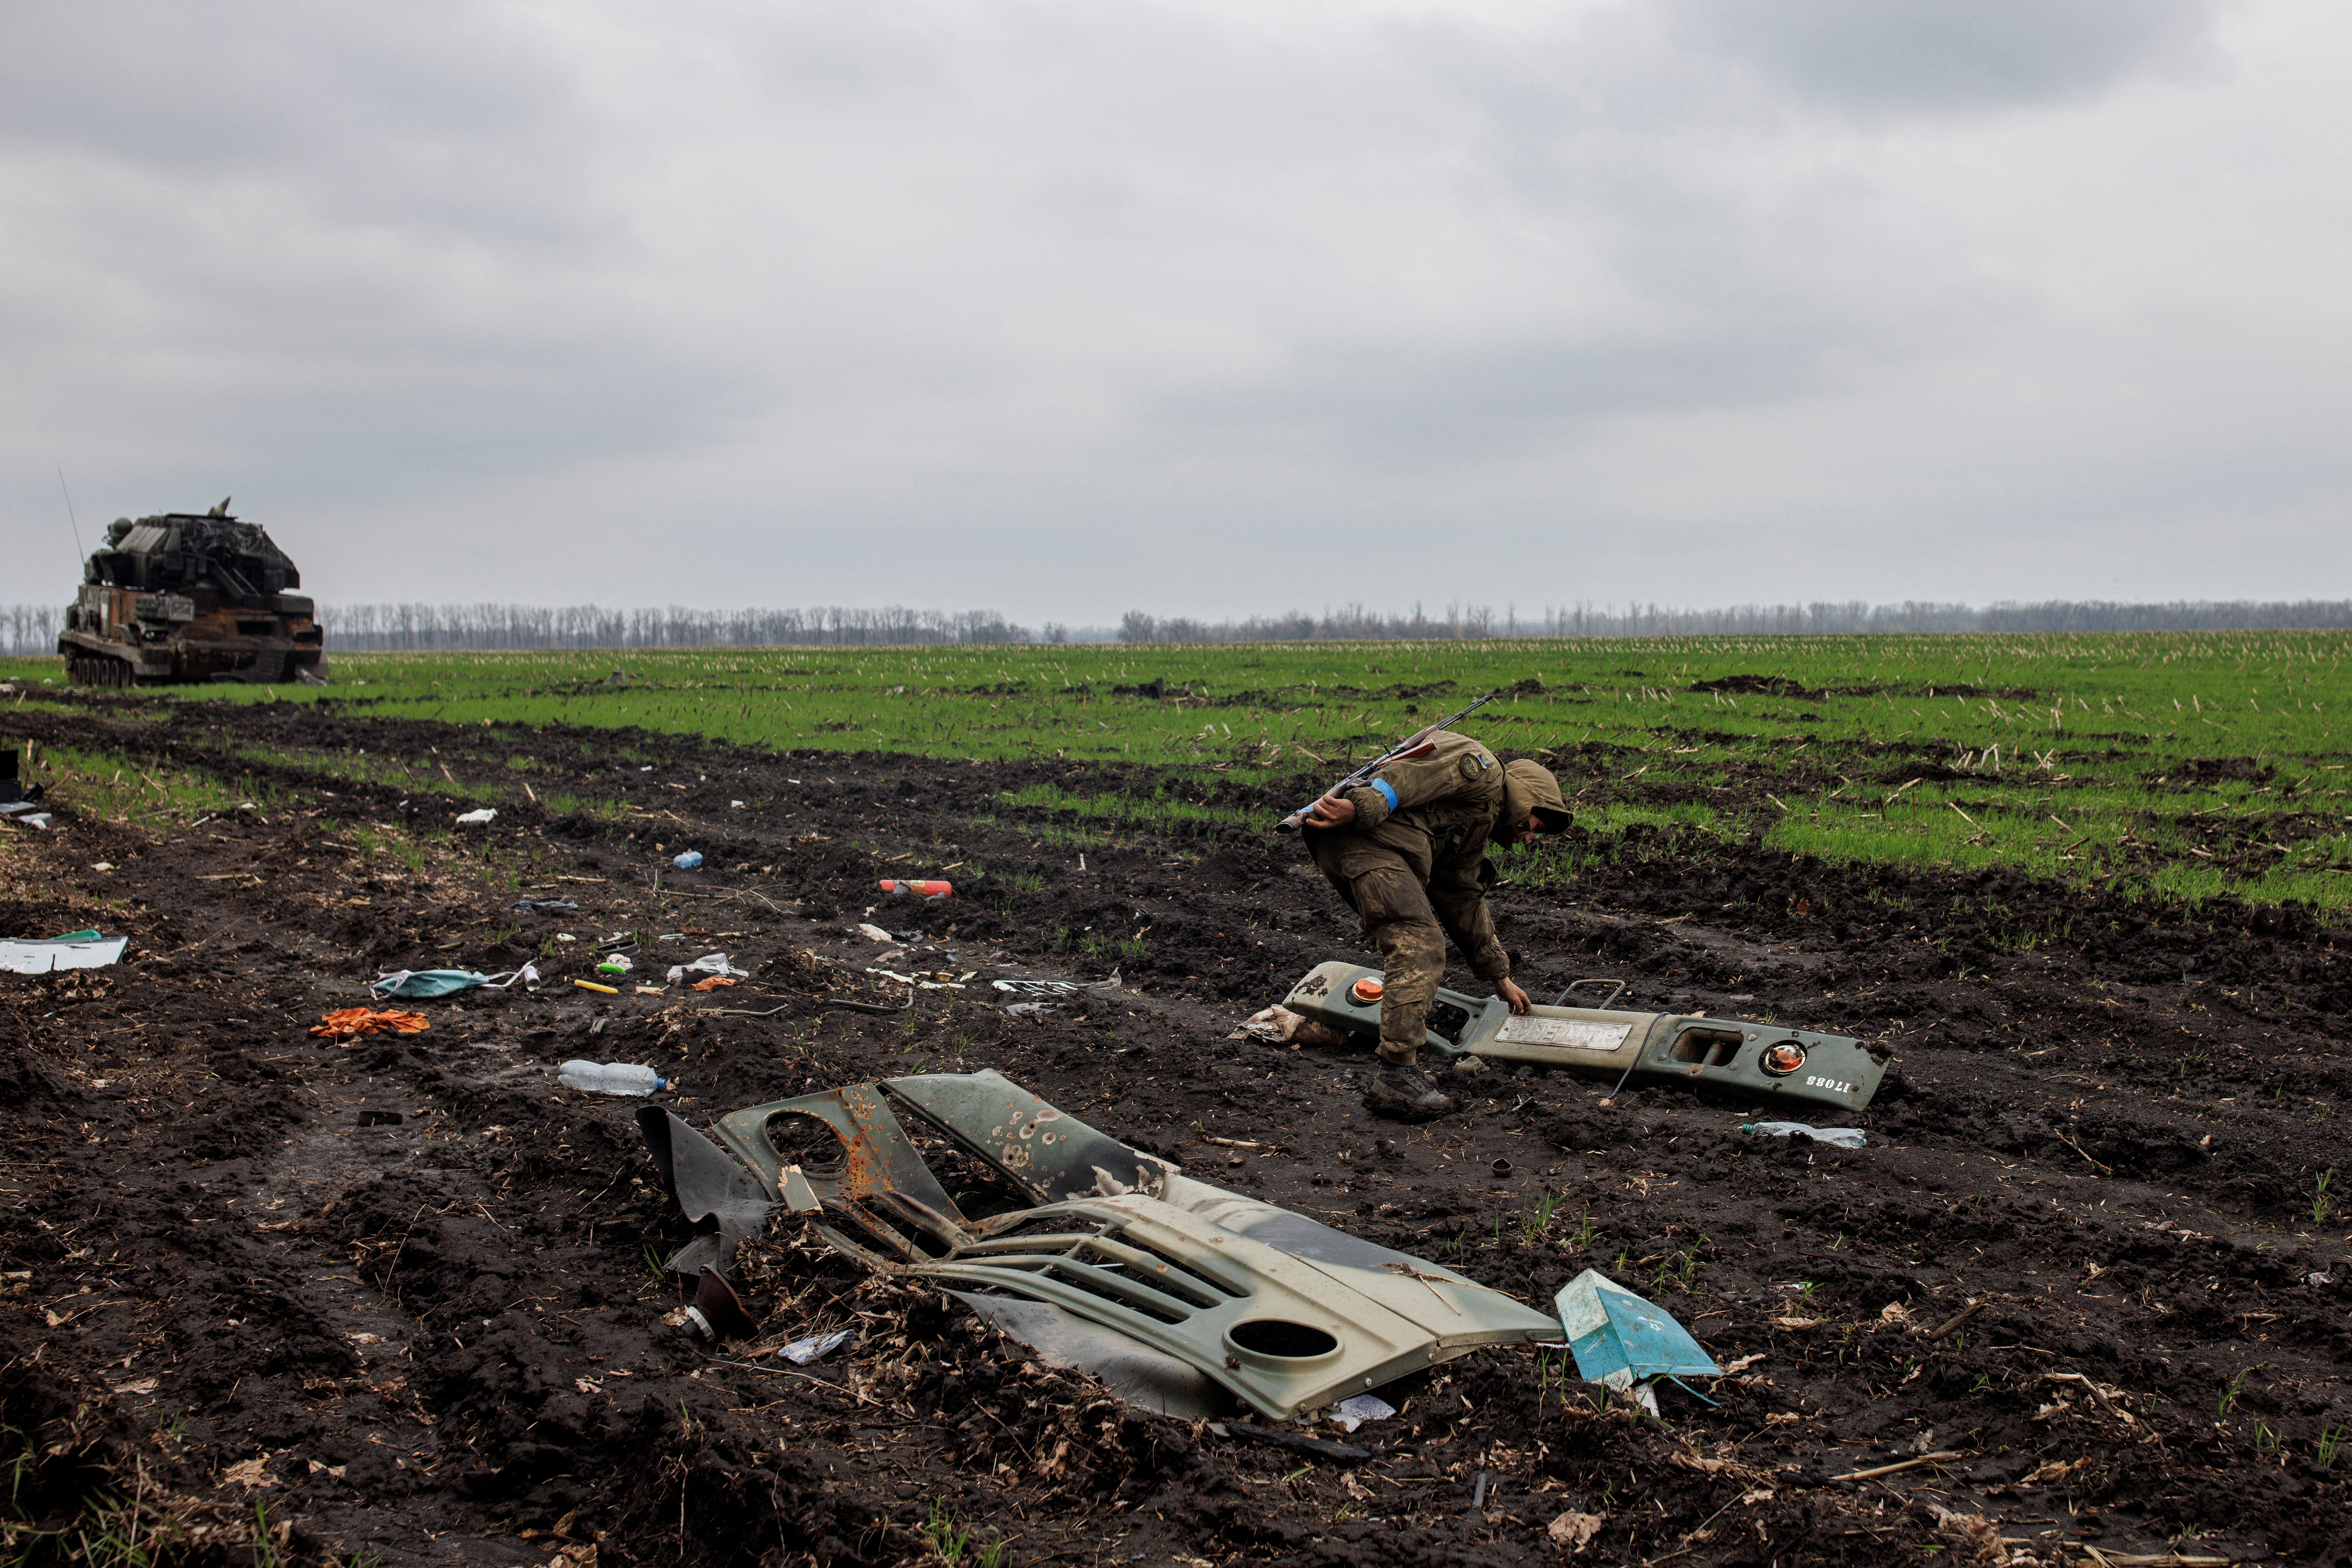 Un soldado ucraniano observa una parte de un vehículo militar ruso destruido, en medio del ataque de Rusia a Ucrania, en el pueblo de Husarivka, en la región de Kharkiv, Ucrania, el 14 de abril de 2022. Imagen tomada el 14 de abril de 2022. REUTERS/Alkis Konstantinidis